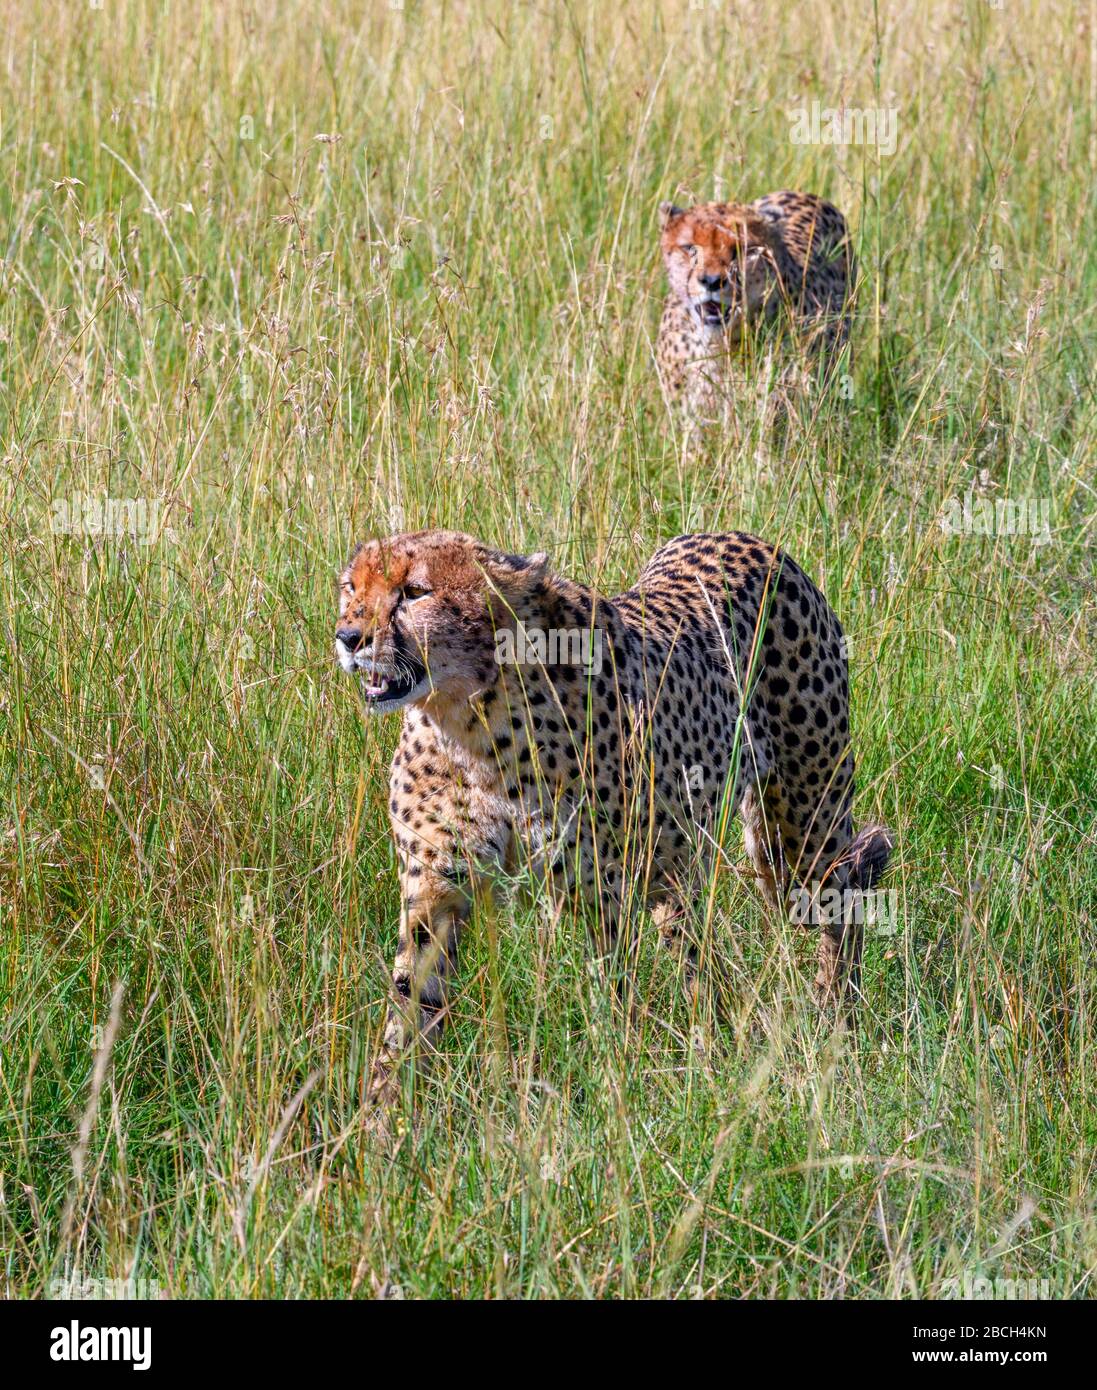 Cheetah (Acinonyx jubatus). Des cheetahs marchant à travers de longues herbes dans la réserve nationale de Masai Mara, Kenya, Afrique Banque D'Images